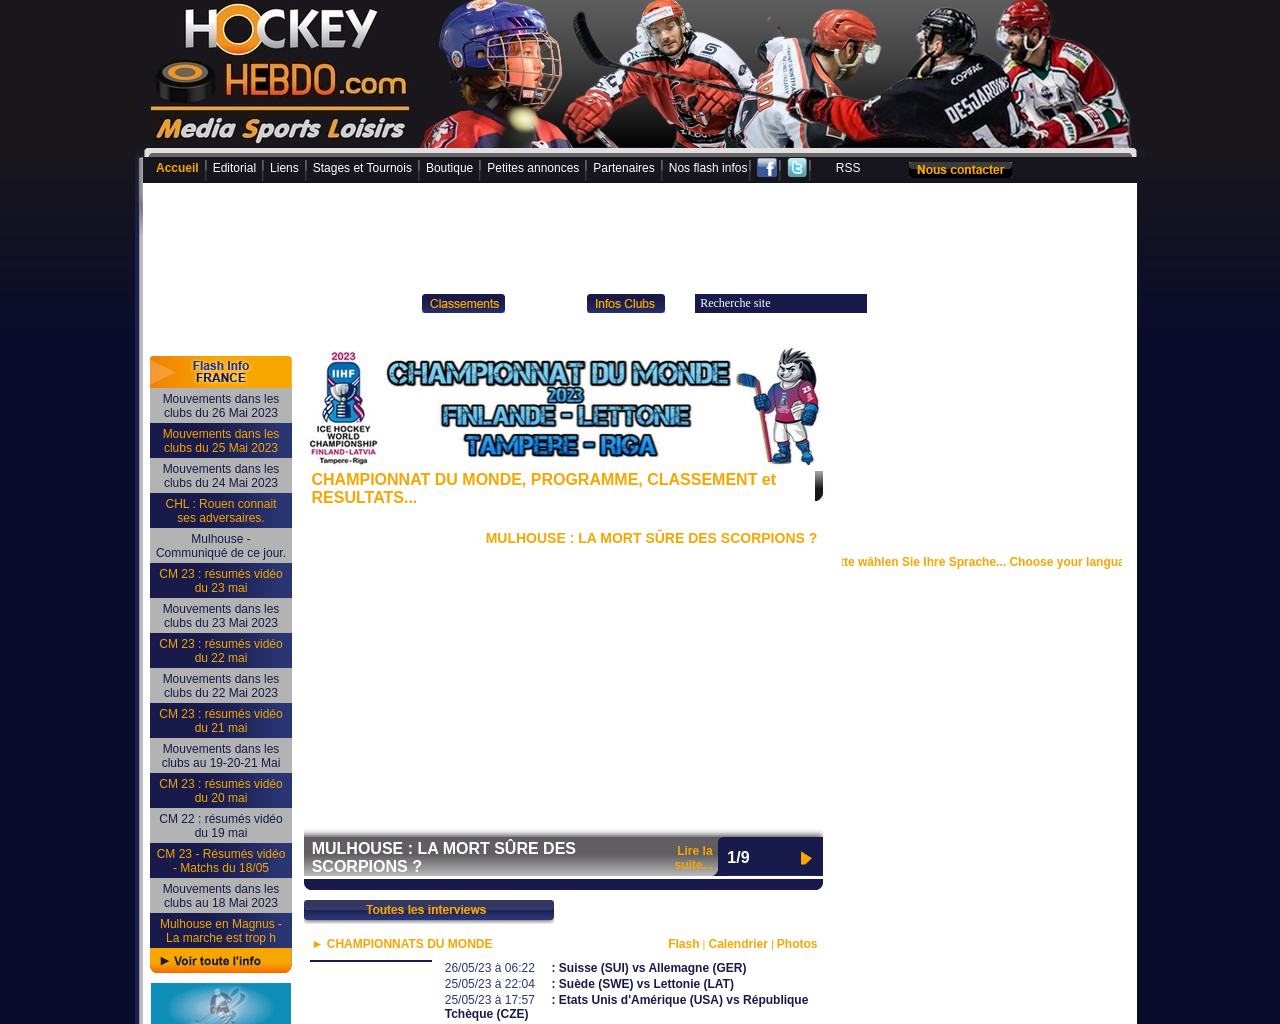 www.hockeyhebdo.com